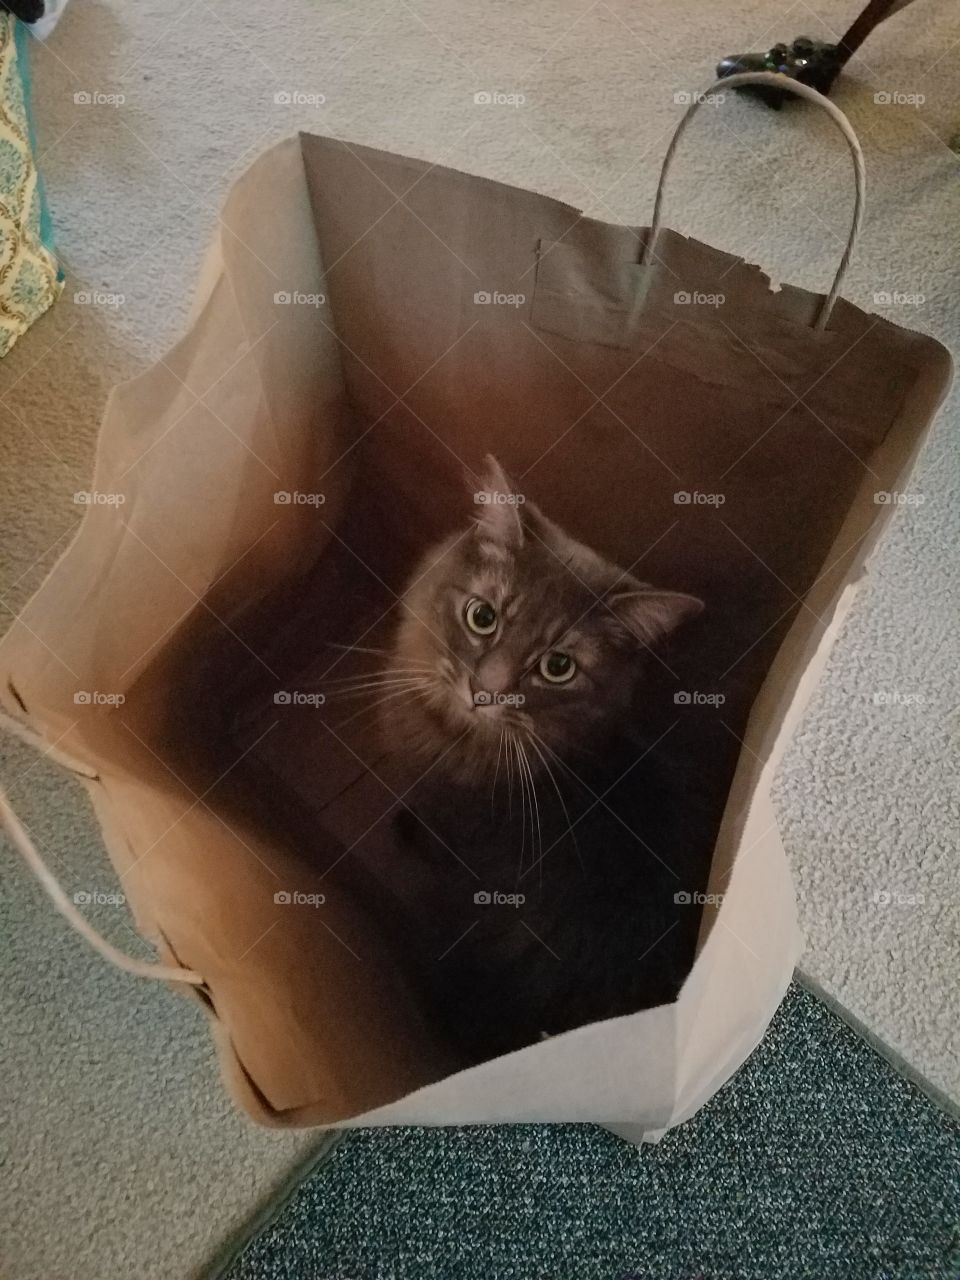 A cat in a bag.